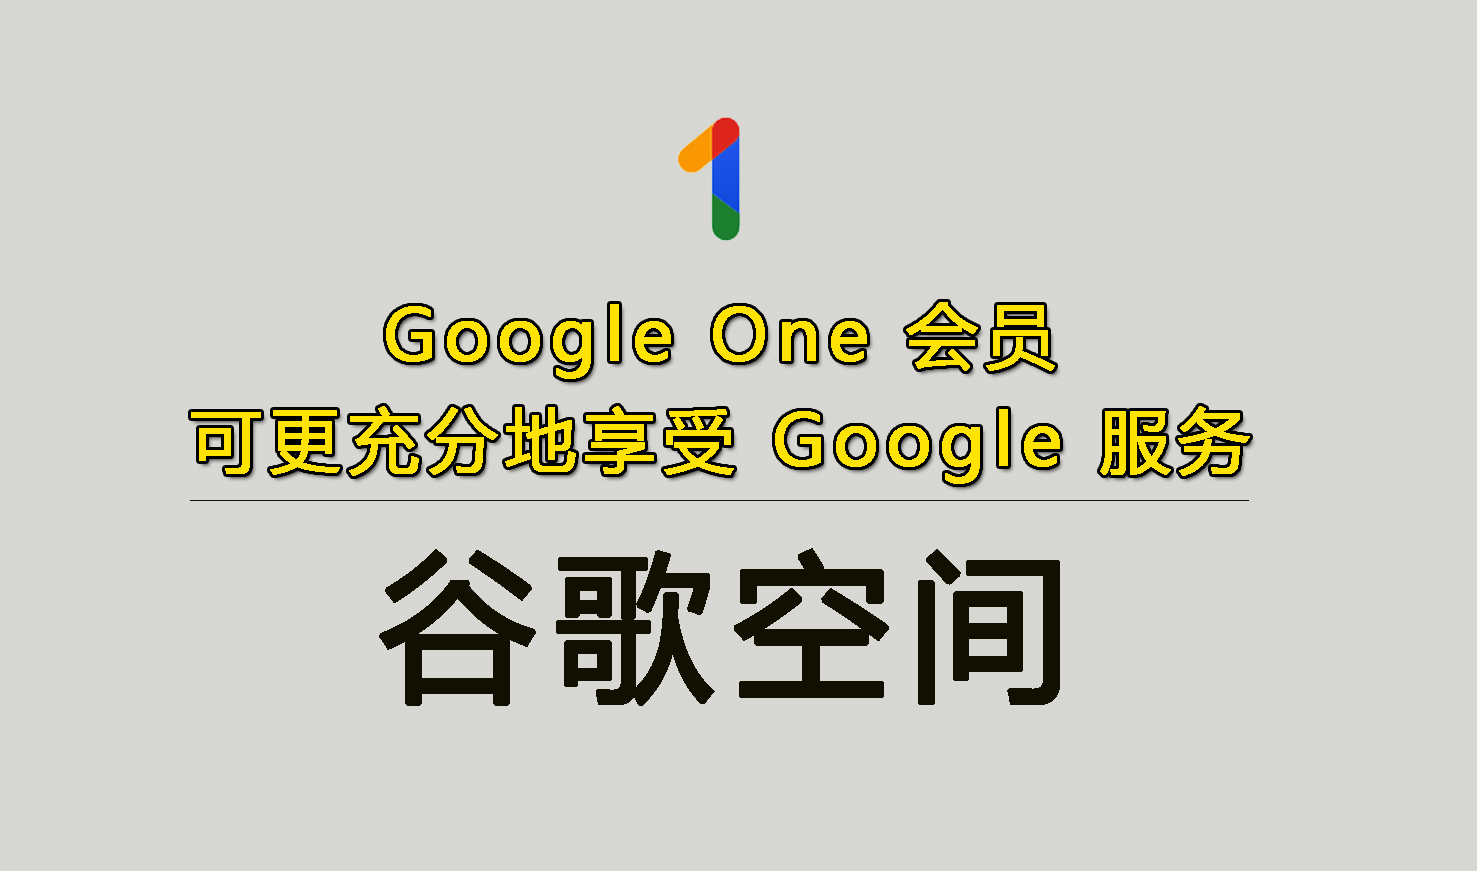 Google One 会员|谷歌空间升级